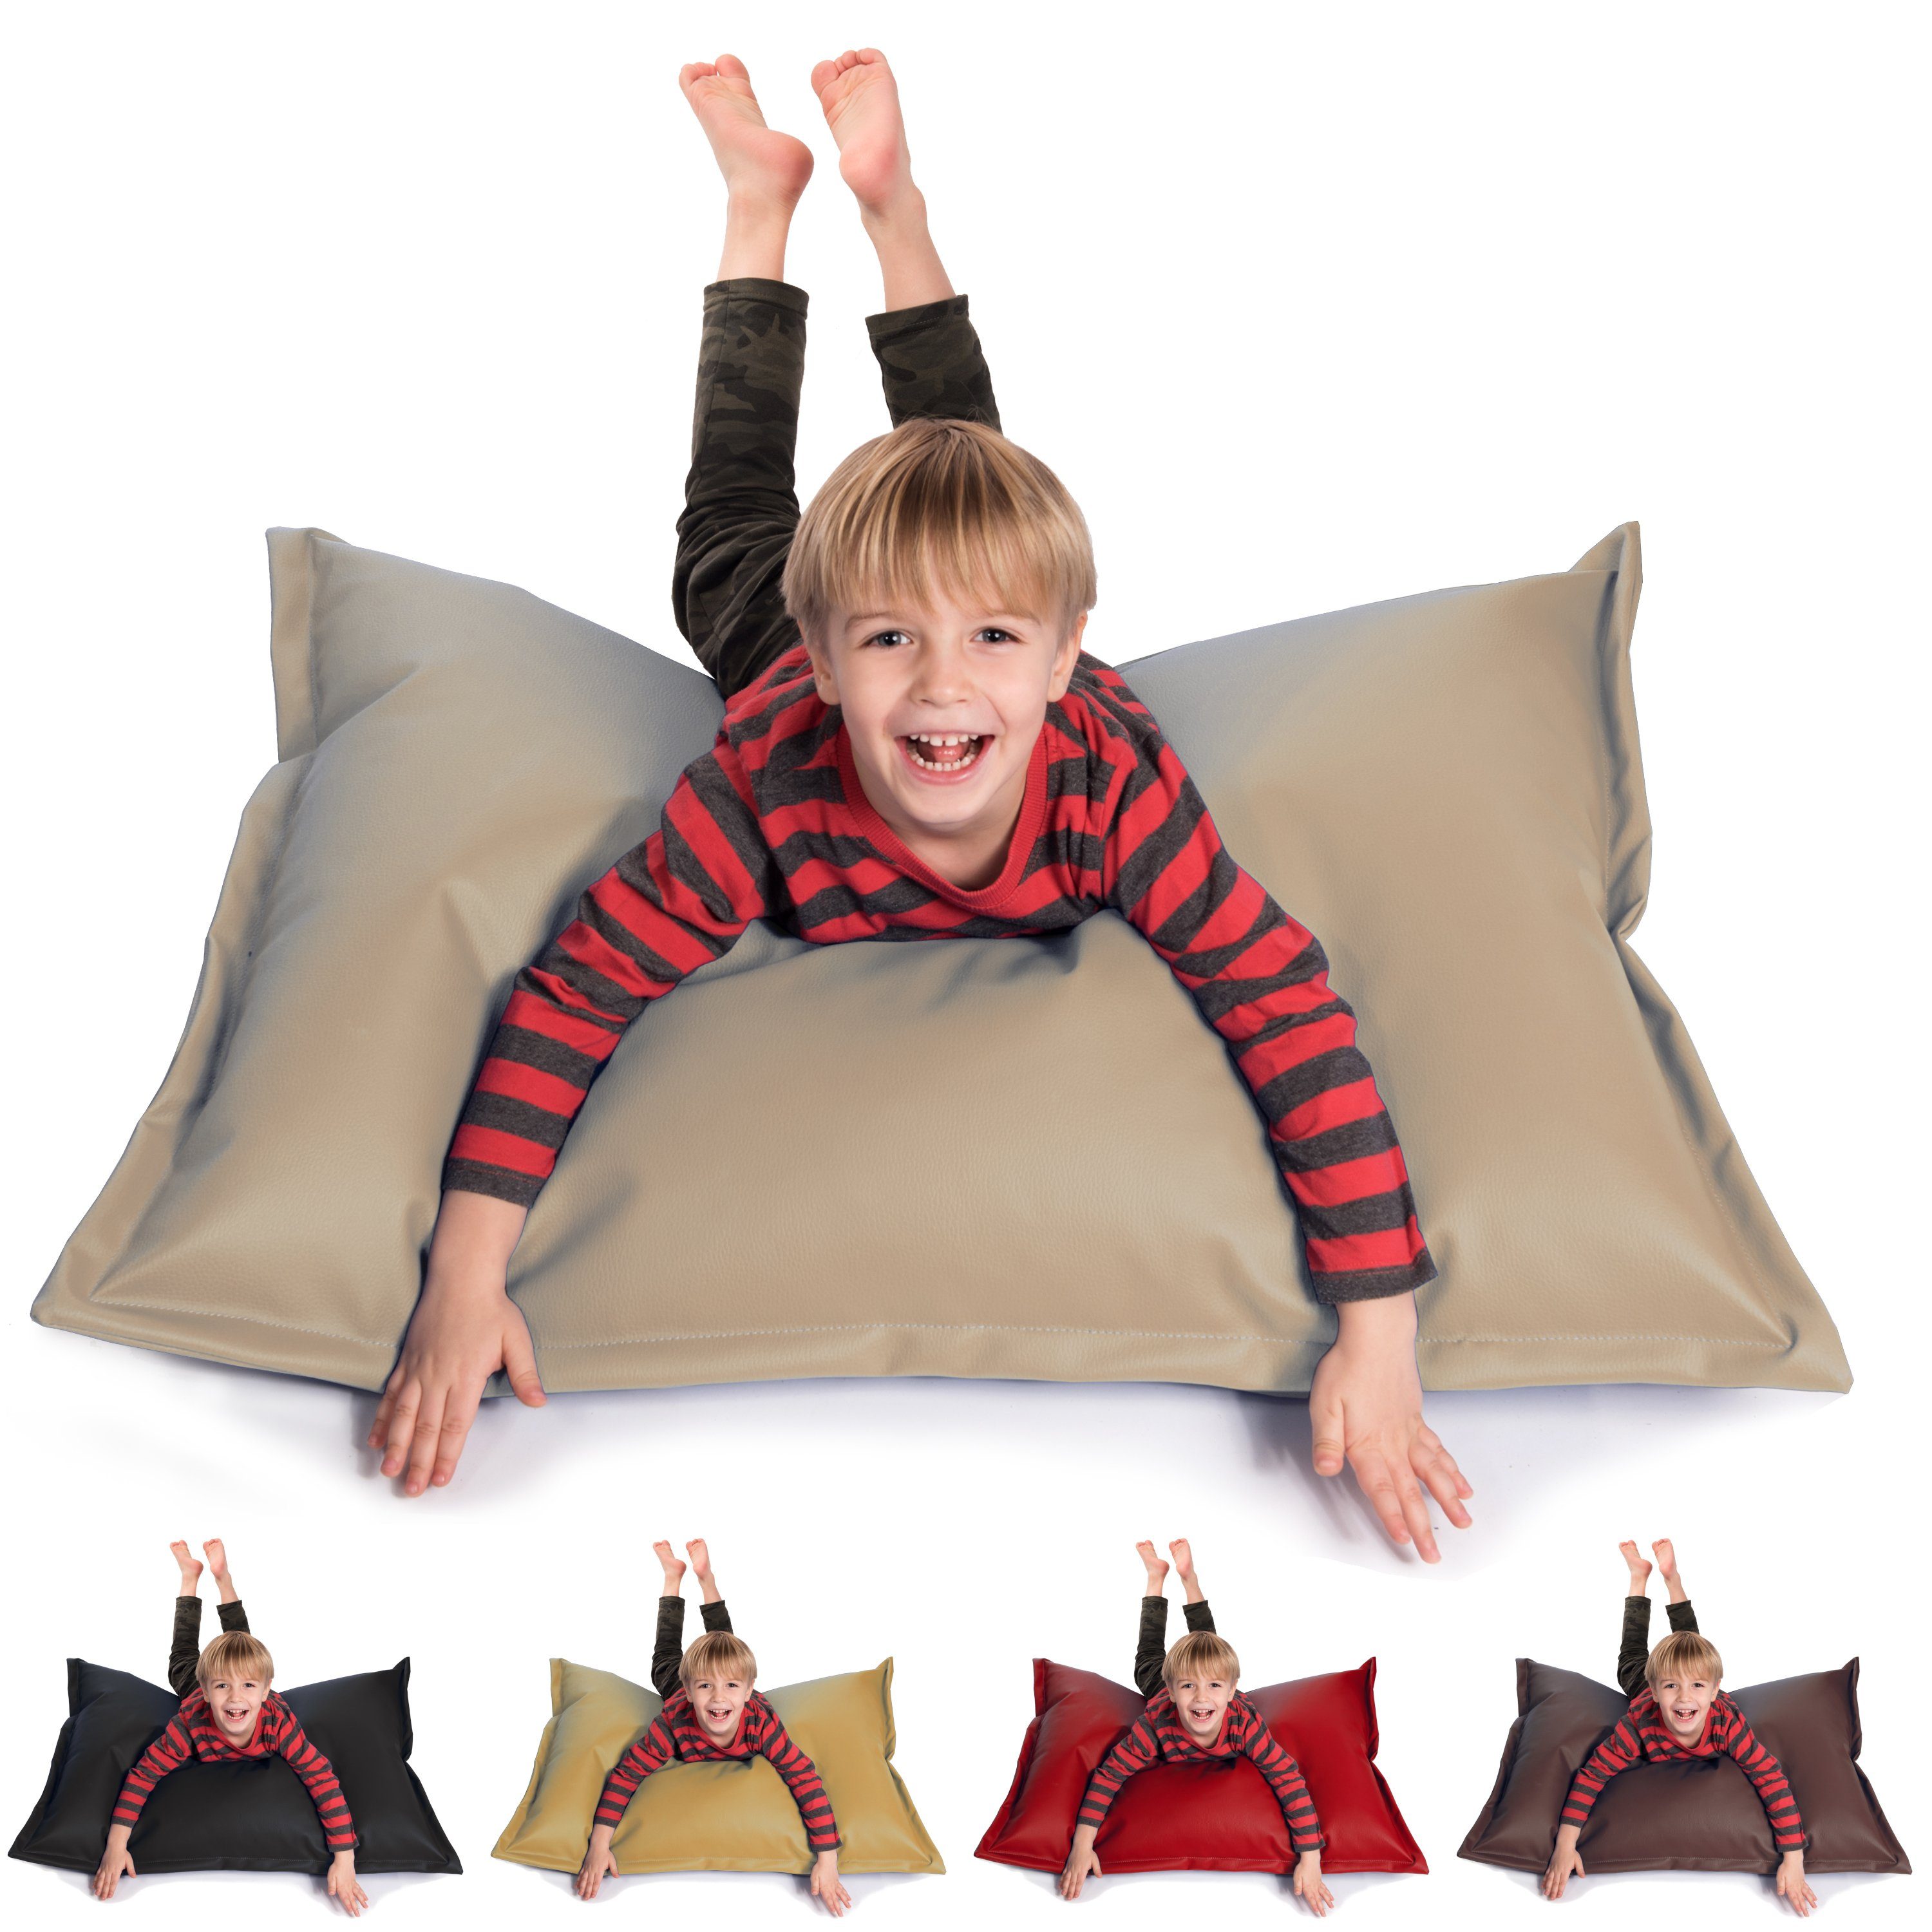 & cm Füllung Styropor Kinder Kunstleder sunnypillow x 100 Outdoor Indoor & Sitzsack für Erwachsene, aus 60L 70 mit